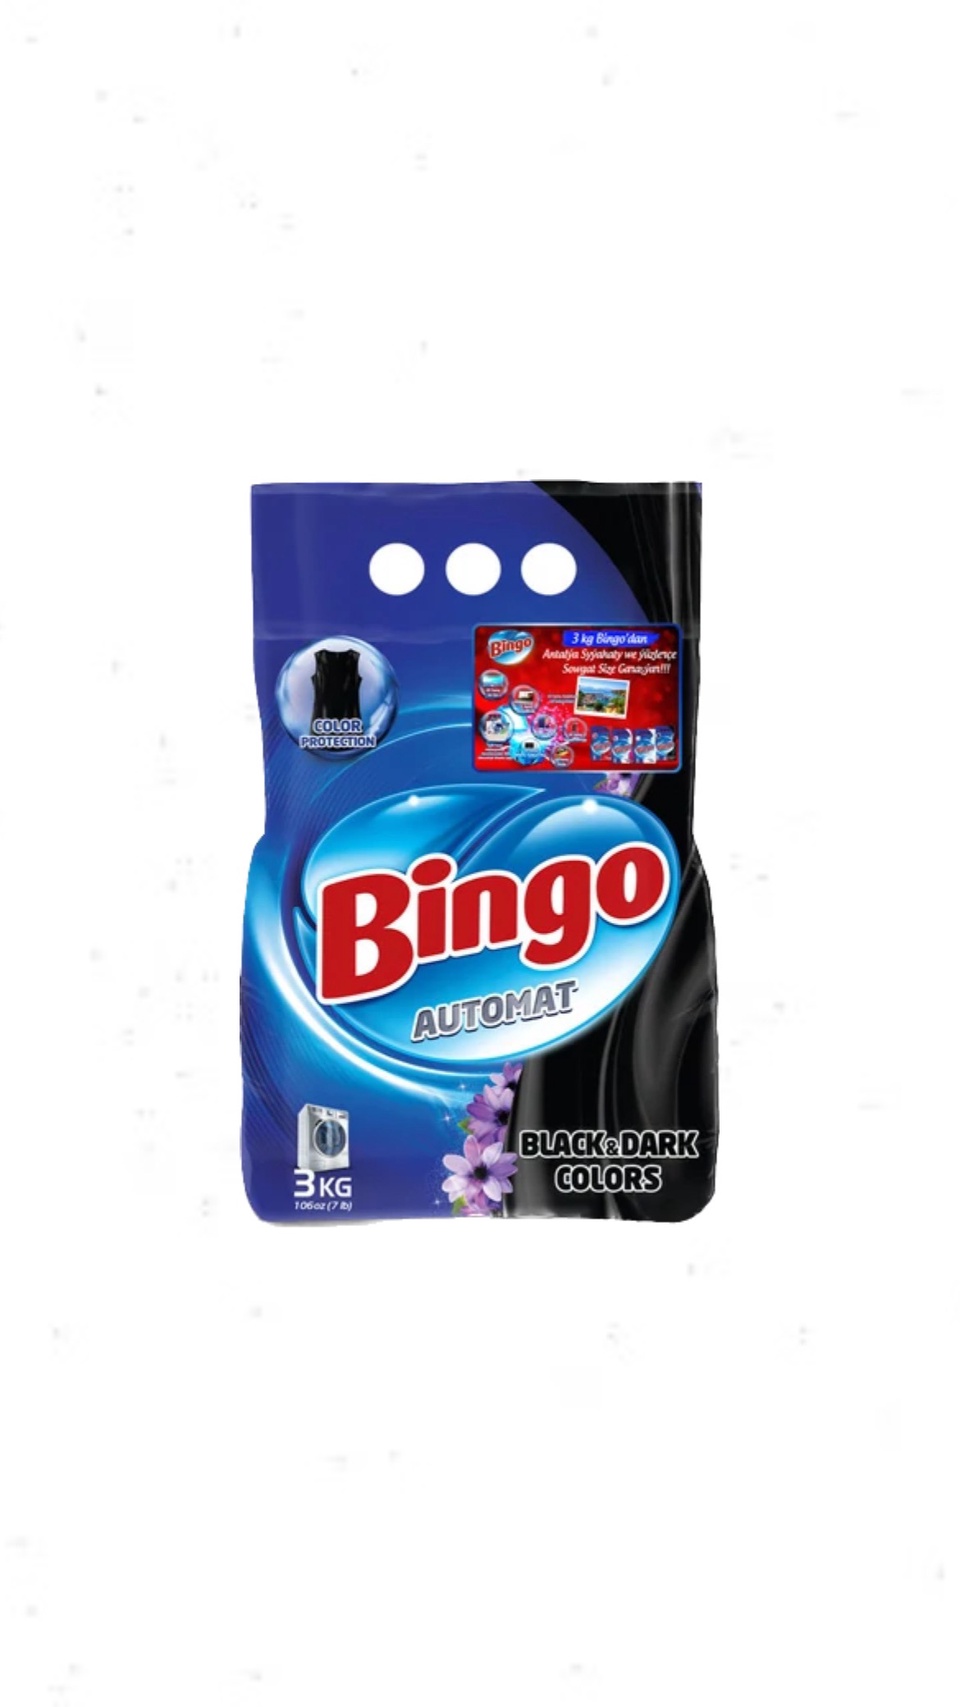 Стиральный порошок Bingo Автомат Starry Night 3 кг - 500 ₽, заказать онлайн.